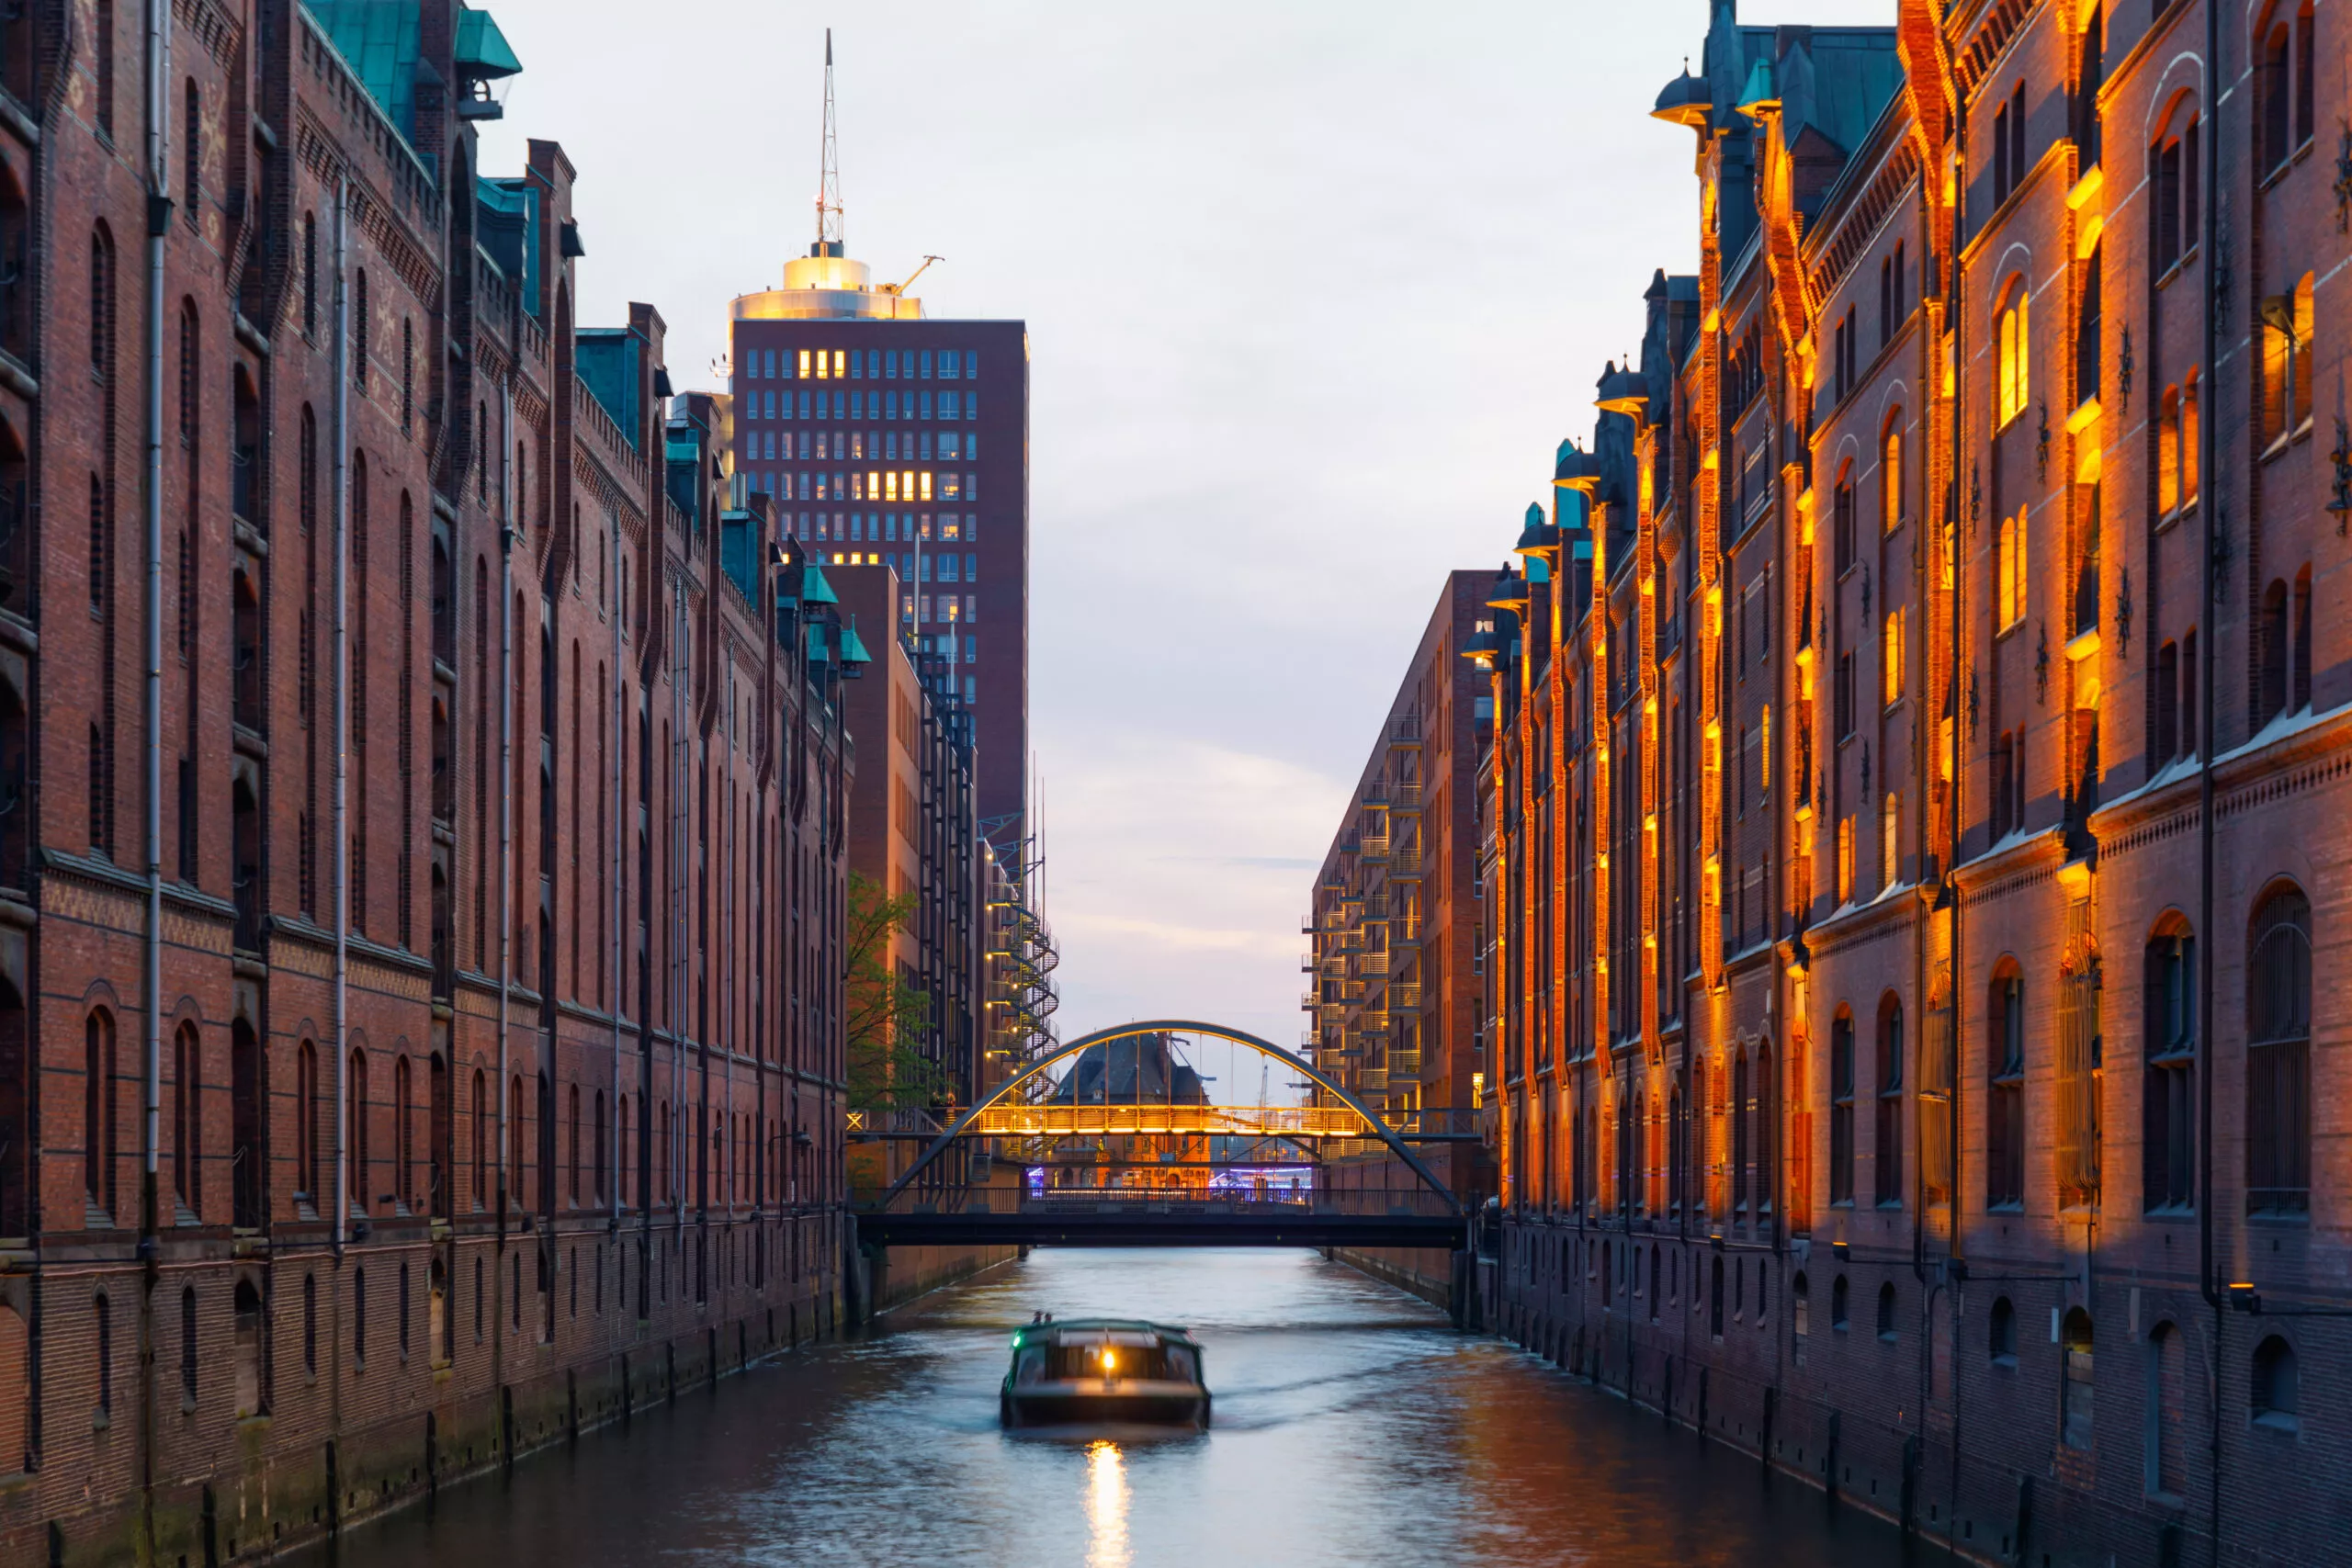 Boot in kanaal bij historische haven Speicherstadt in Hamburg bij zonsondergang